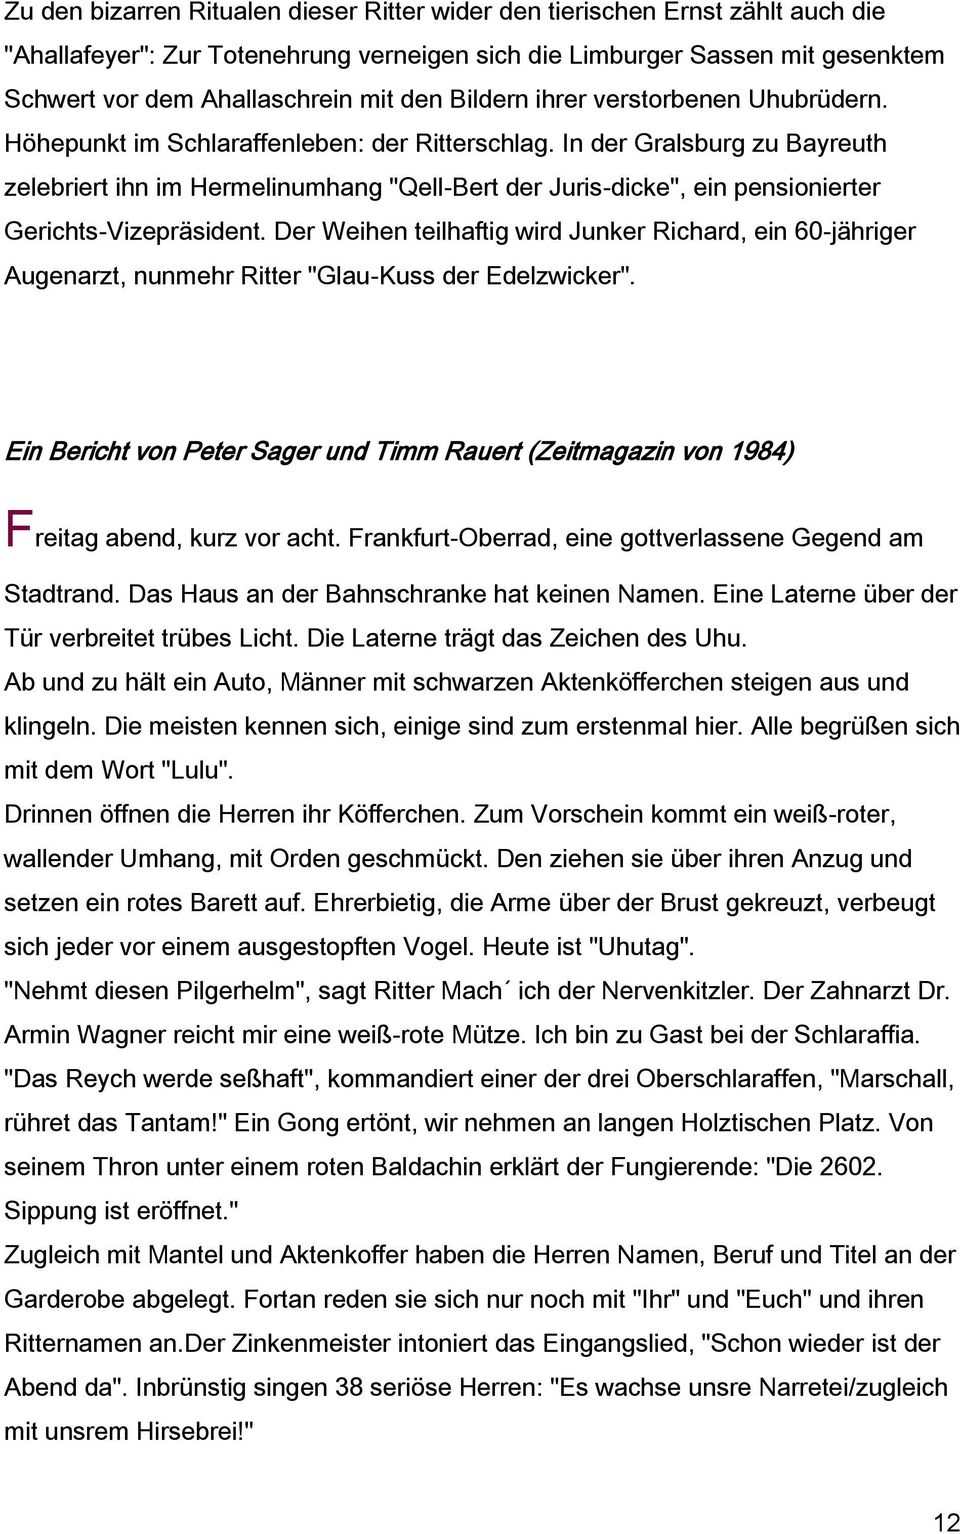 In der Gralsburg zu Bayreuth zelebriert ihn im Hermelinumhang "Qell-Bert der Juris-dicke", ein pensionierter Gerichts-Vizepräsident.